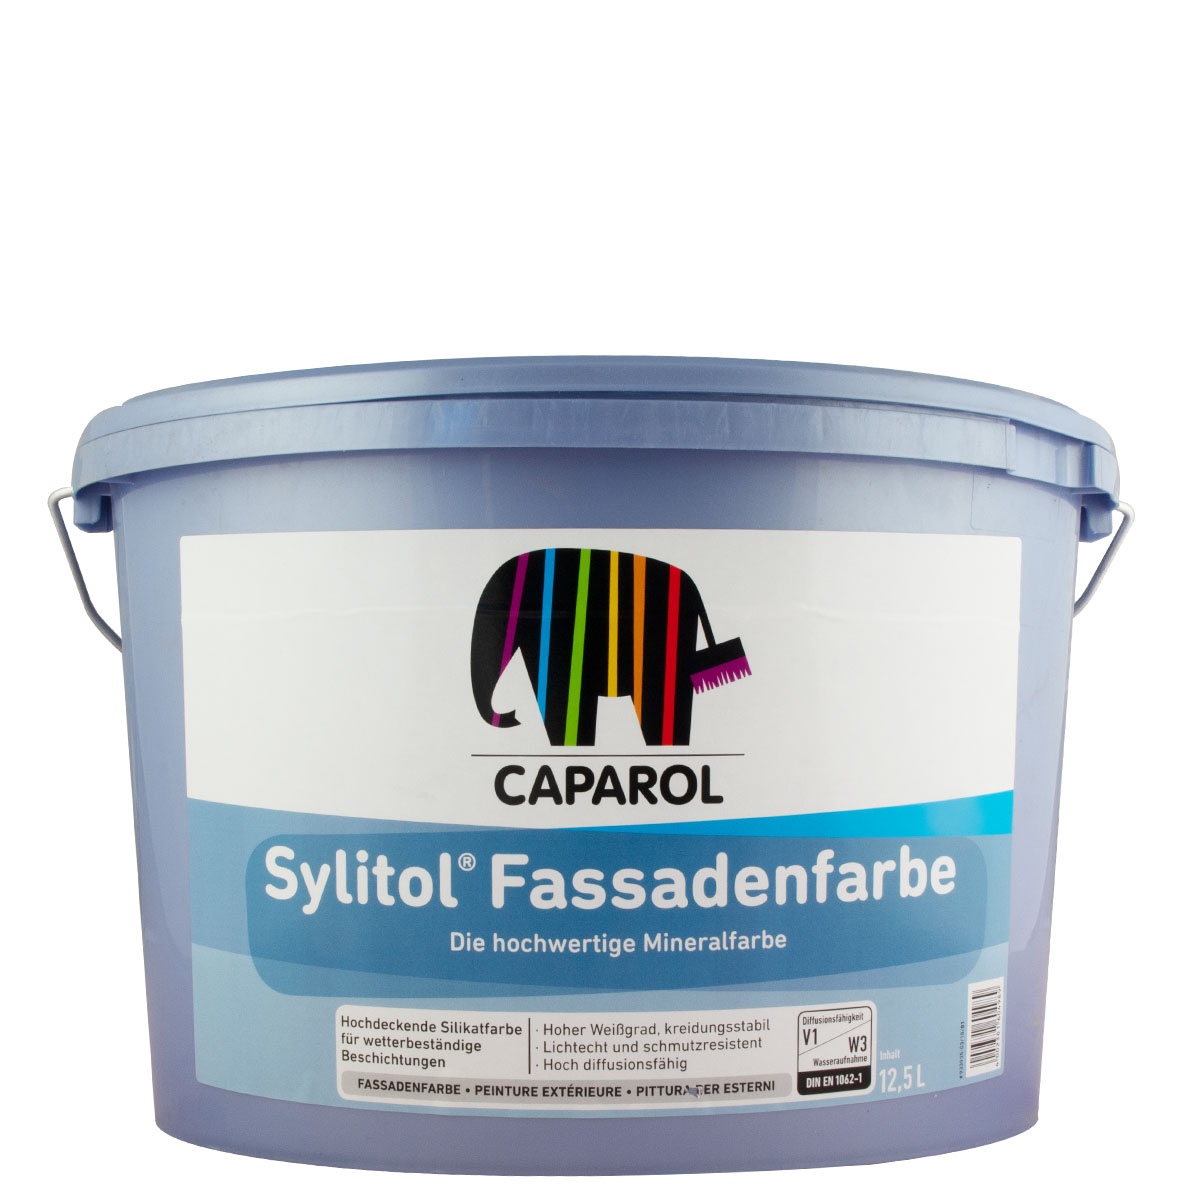 caparol_sylitol_fassadenfarbe_12,5l_gross